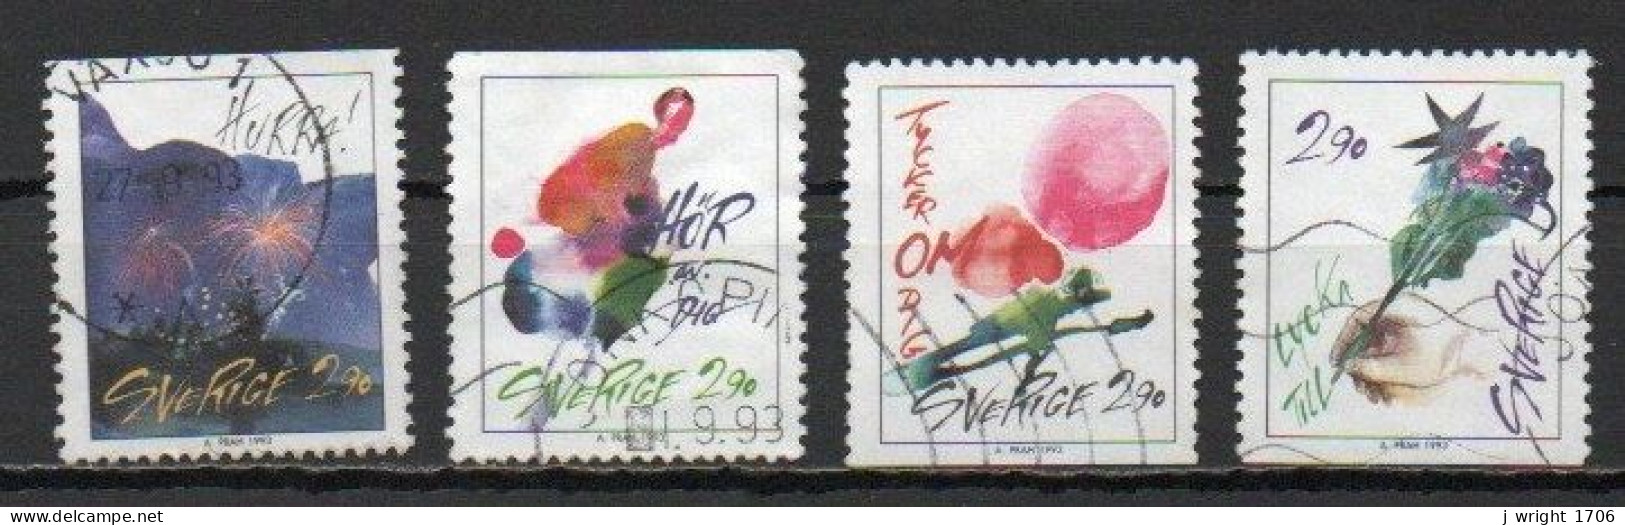 Sweden, 1993, Greetings Stamps, Set, USED - Gebruikt